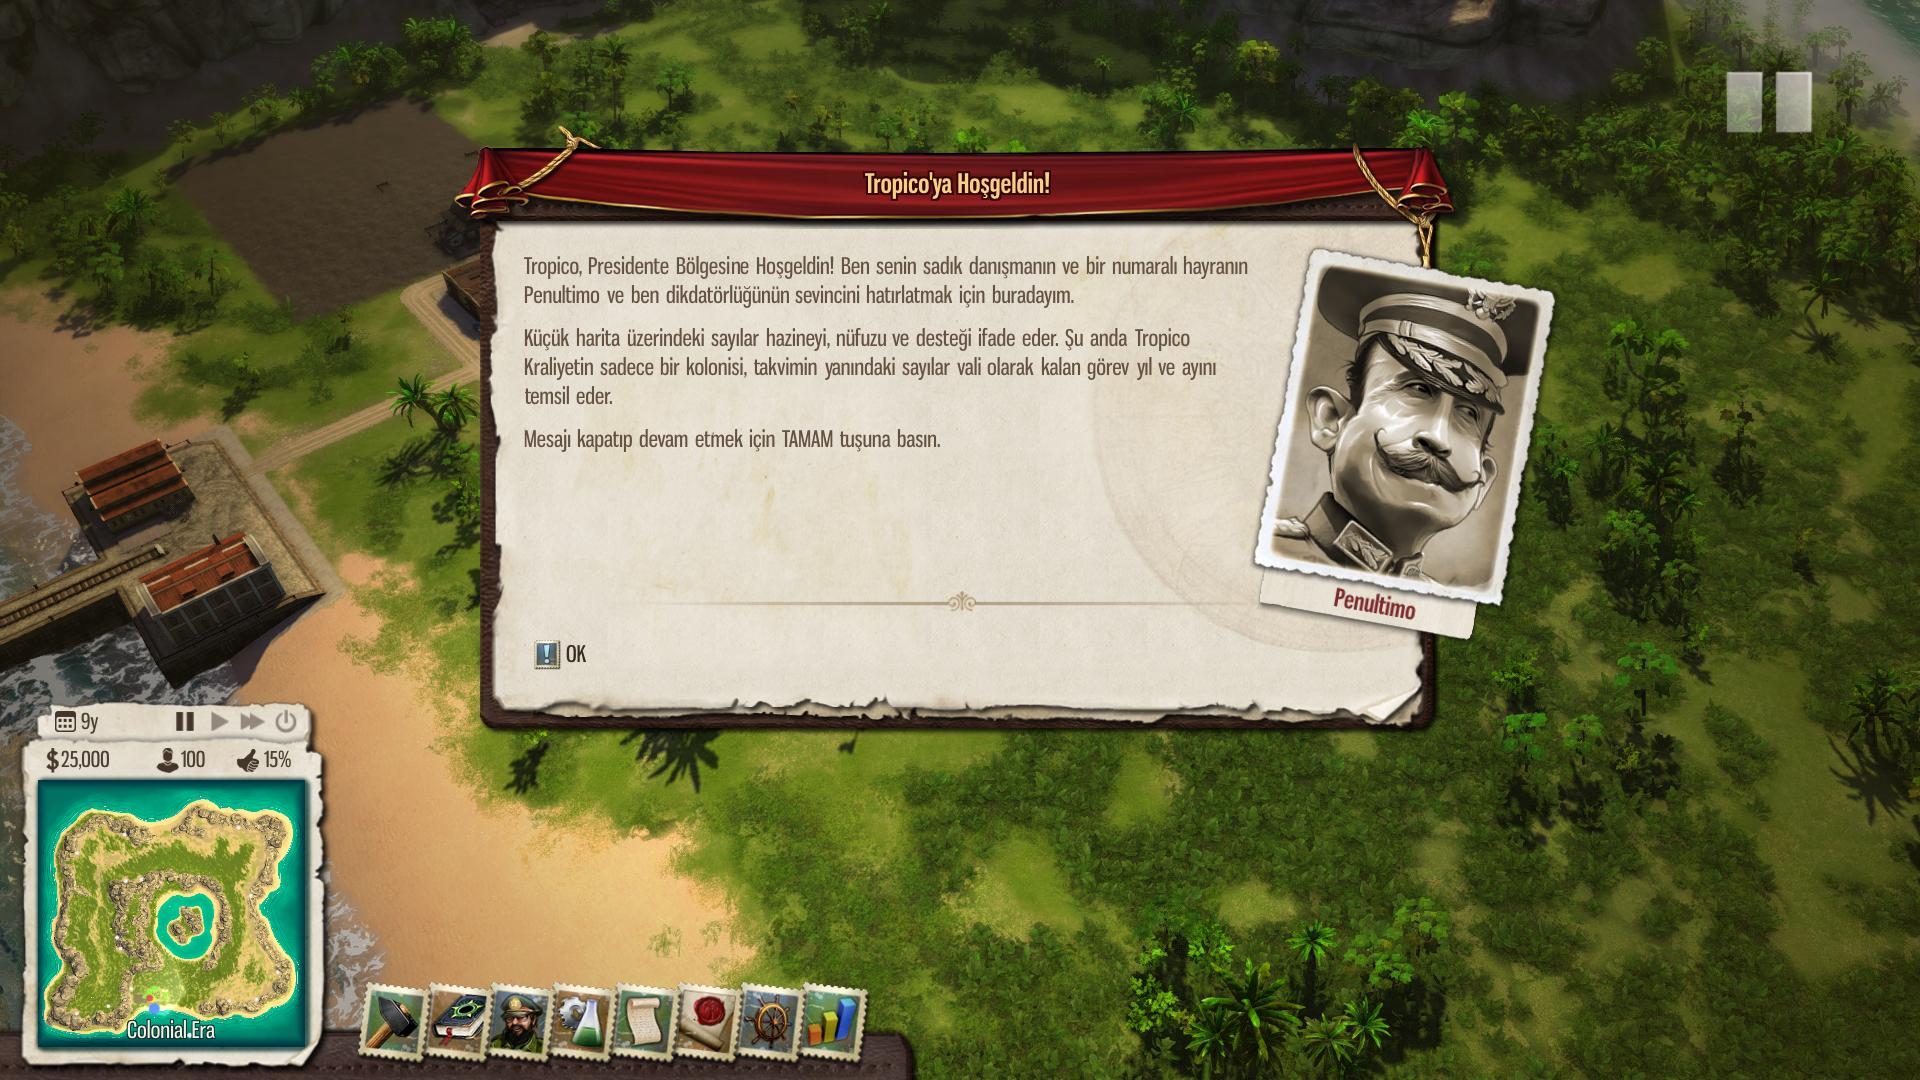 Tropico 5 Türkçe Yama (Projesi) 02.03.201 Devam ediyor